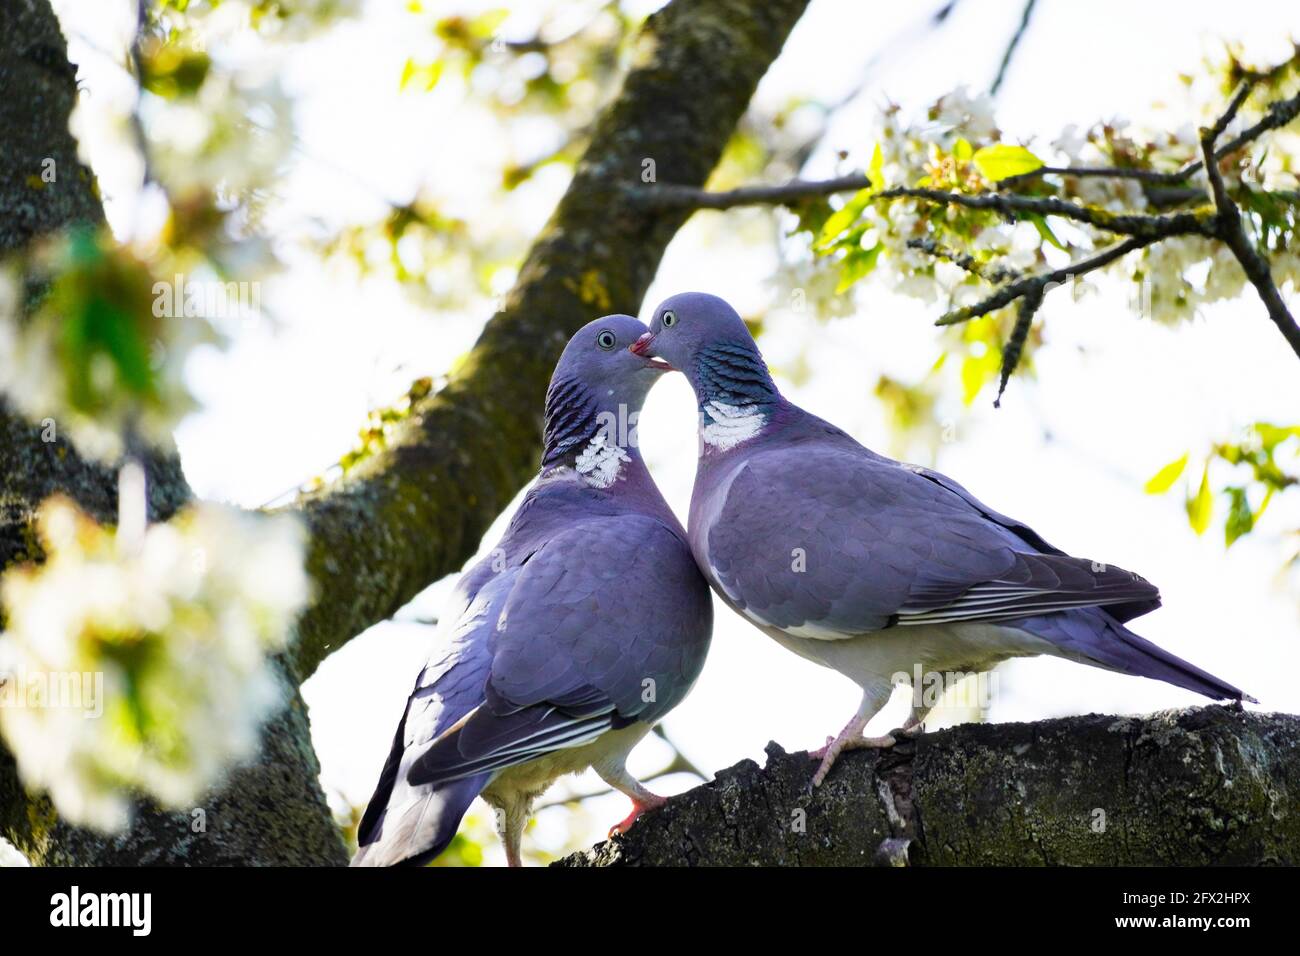 Dos palomas de madera están sentadas en una rama del cerezo. Columba palumbus. Aves con plumaje gris. Pájaro europeo. Foto de stock